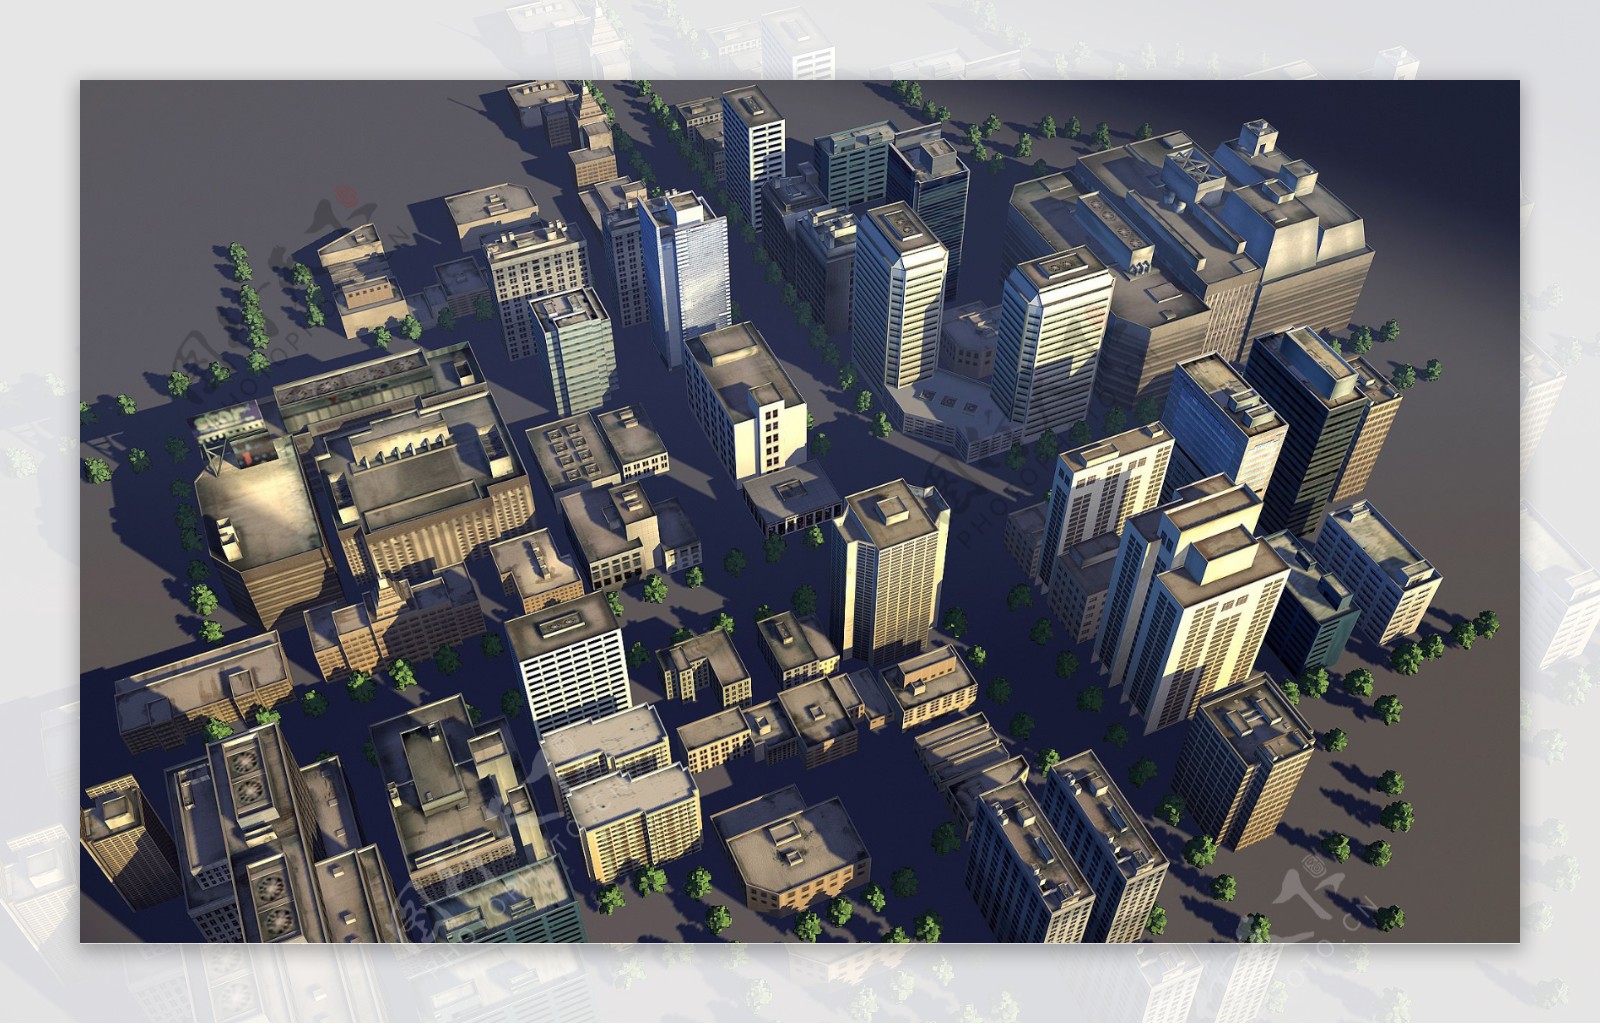 城市配楼模型